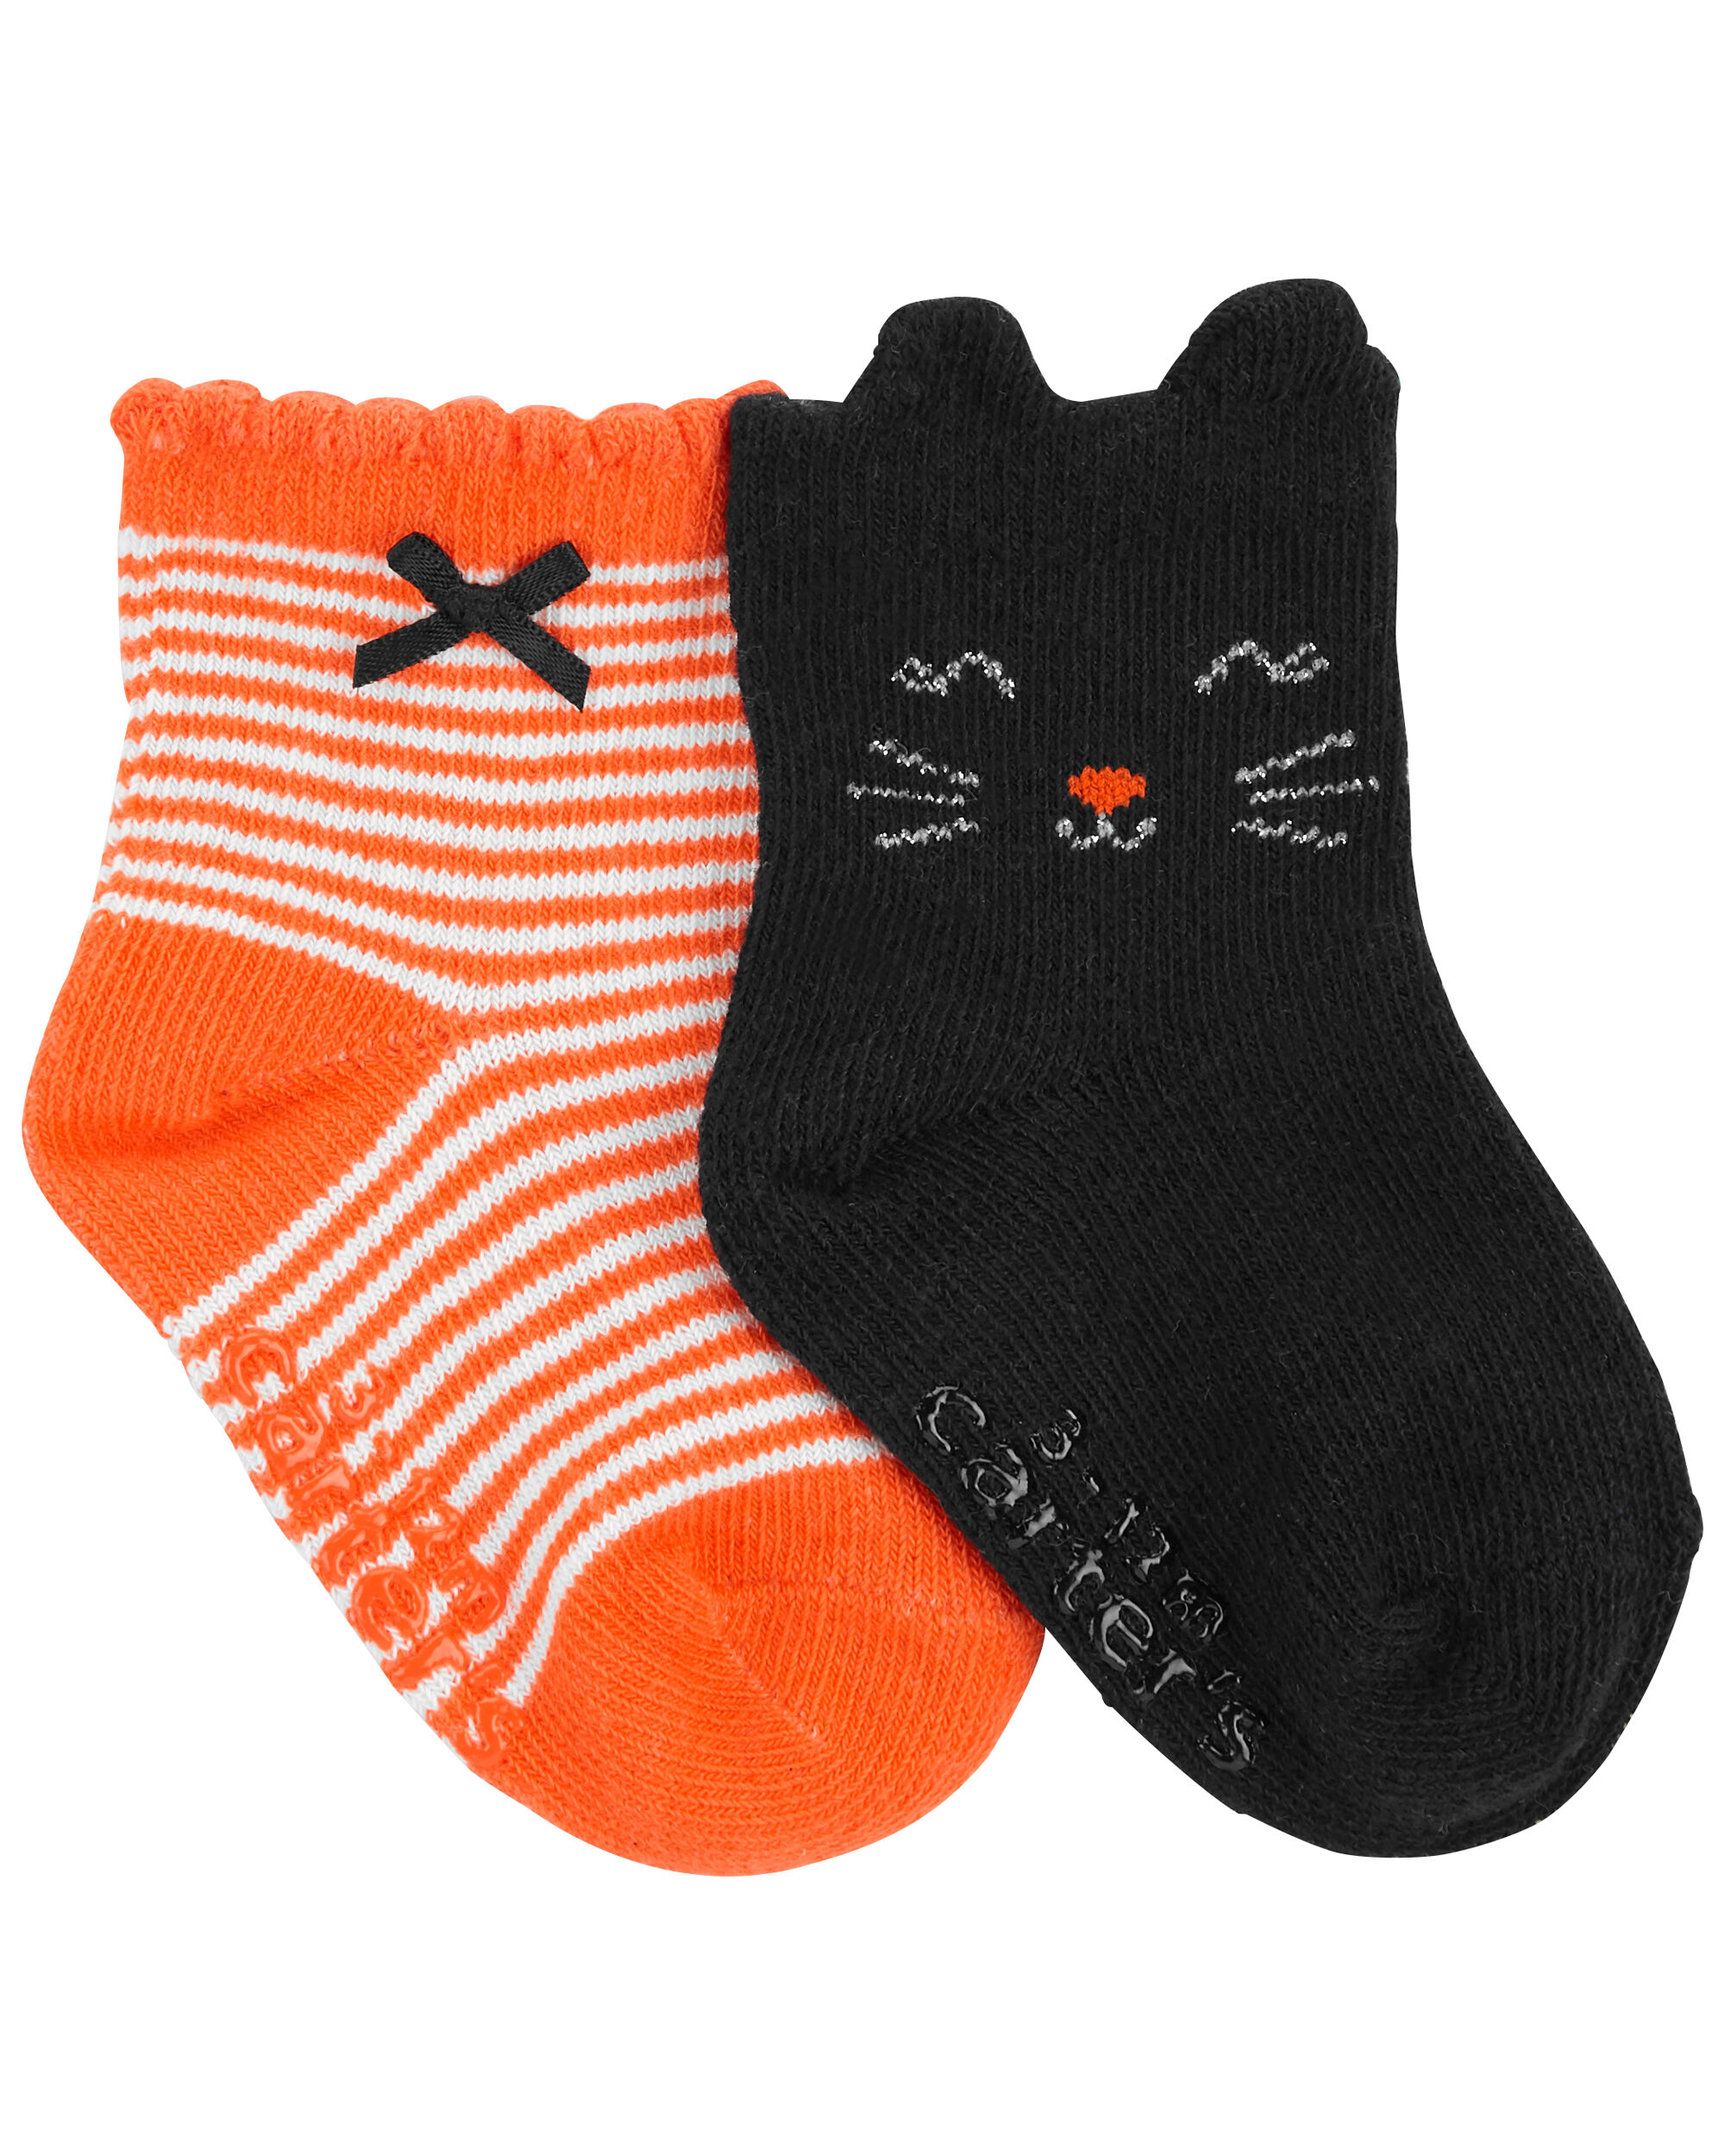 Carters 2-Pack Halloween Socks